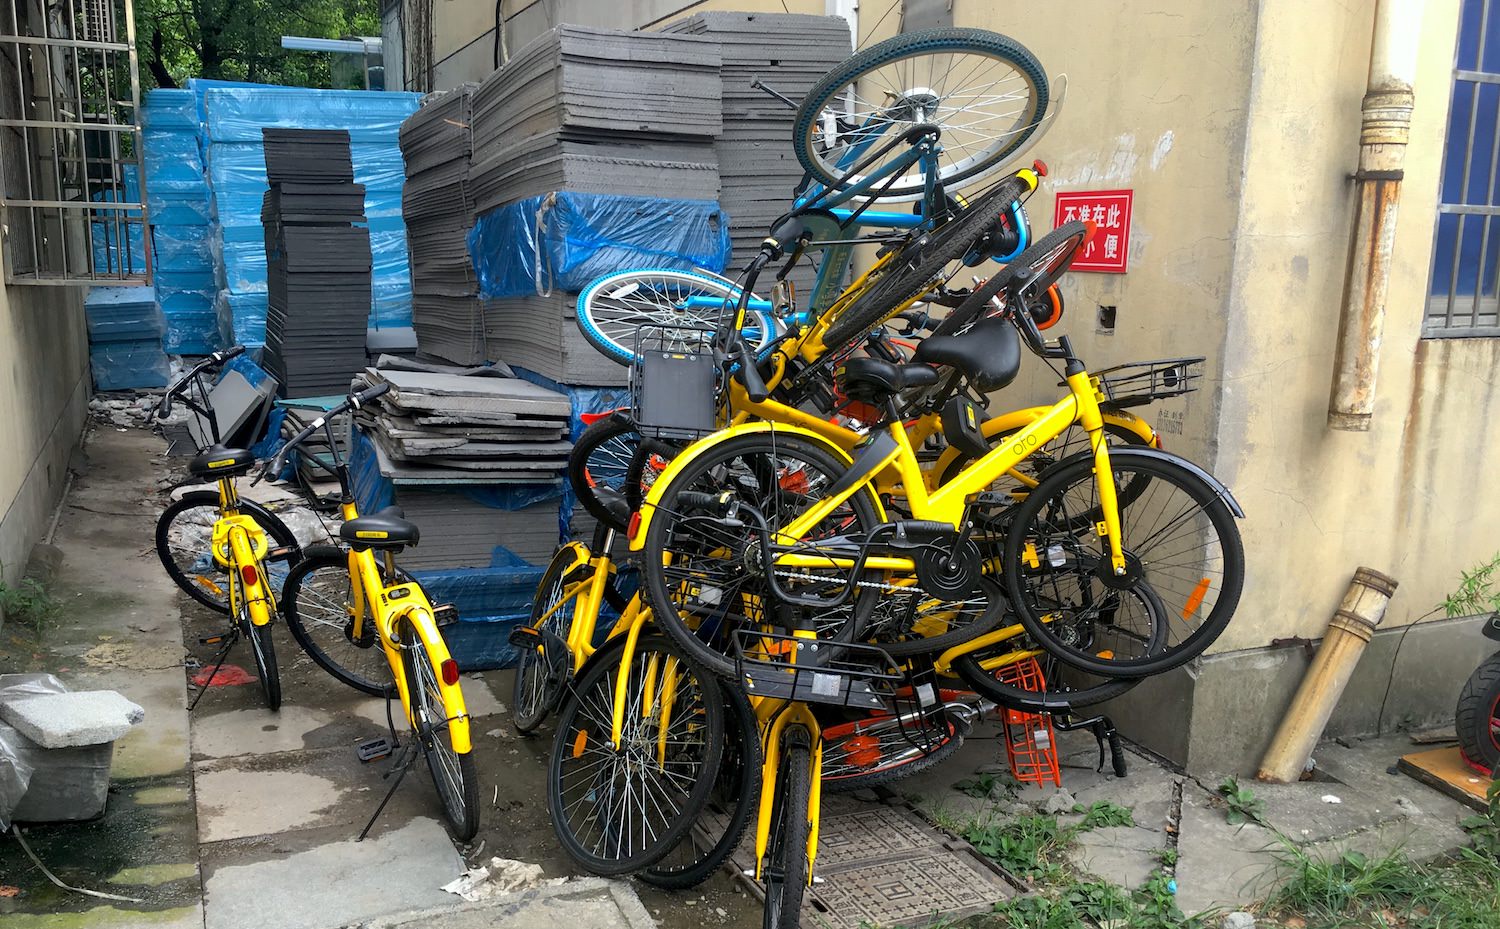 Berg aus beschädigten Leihrädern in Hangzhou